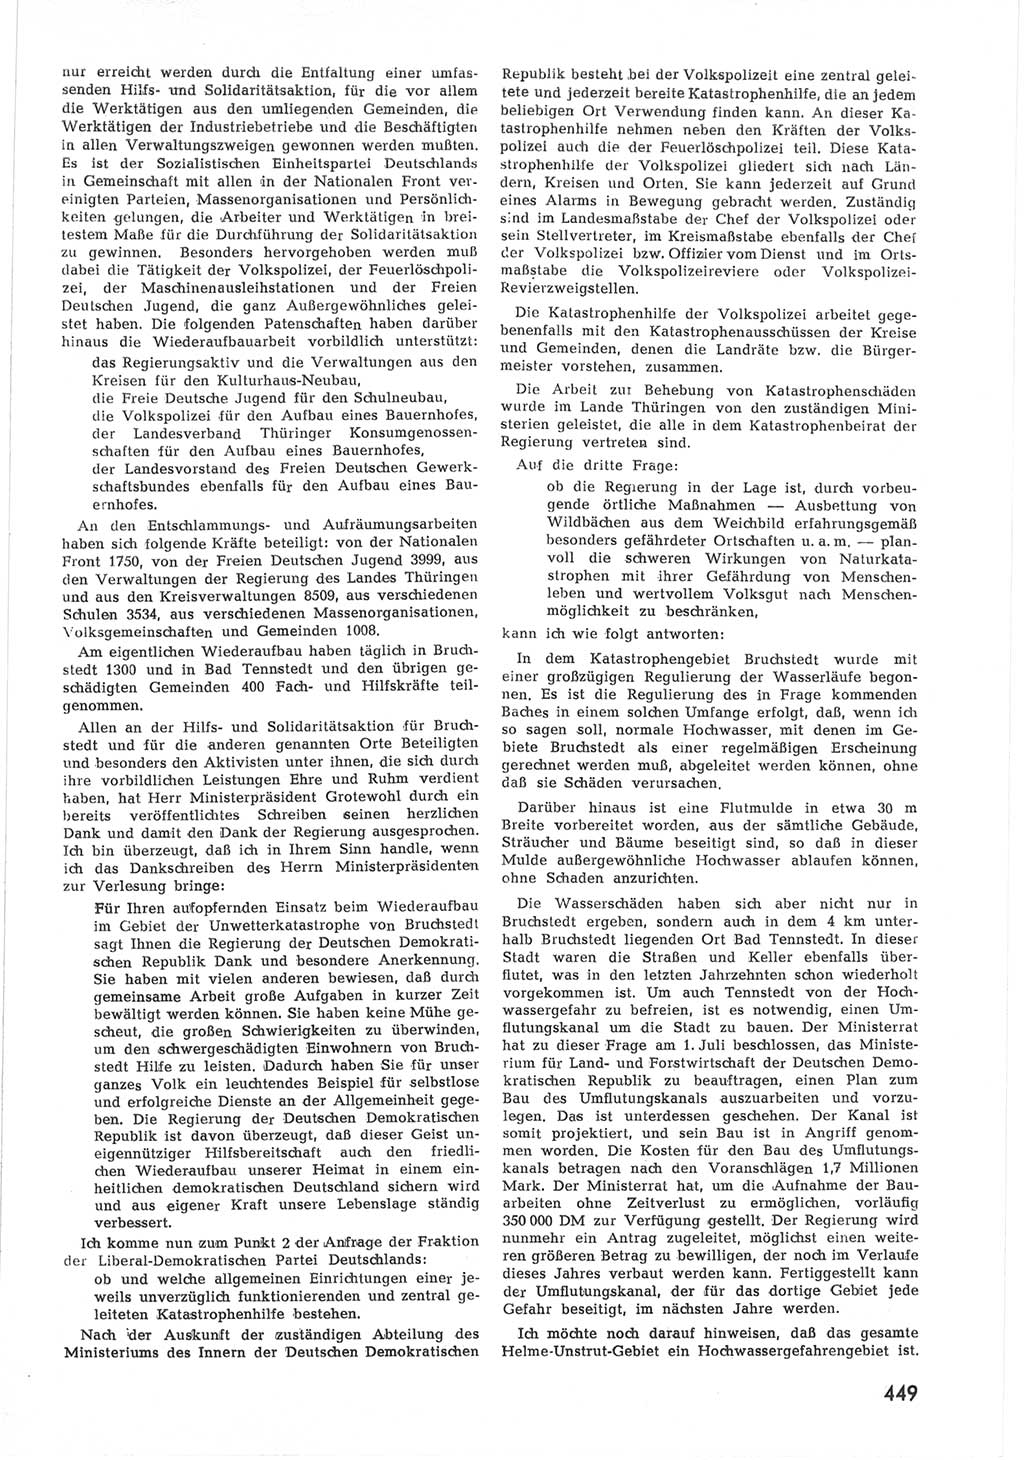 Provisorische Volkskammer (VK) der Deutschen Demokratischen Republik (DDR) 1949-1950, Dokument 467 (Prov. VK DDR 1949-1950, Dok. 467)